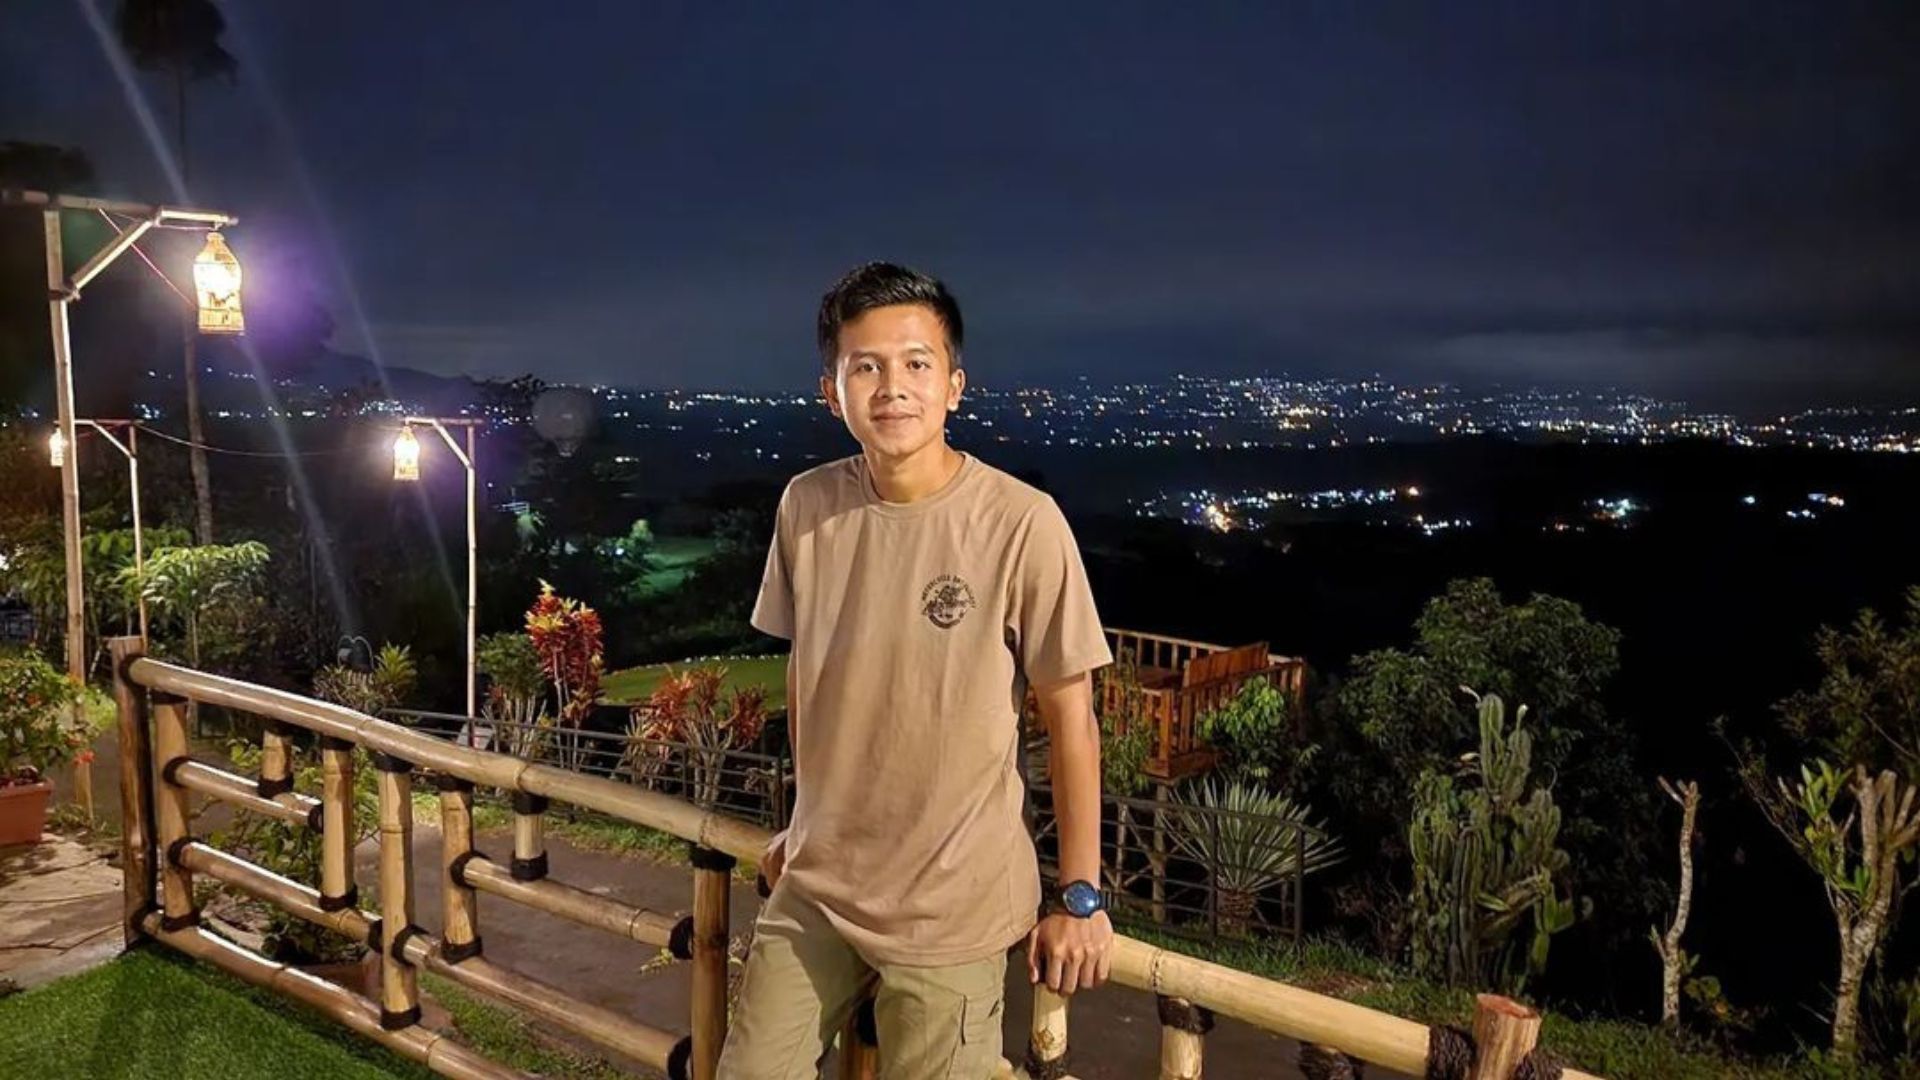 Potret pemandangan Wisata Alam Pasir Kirisik di malam hari. / Instagram / @rizkiart_9